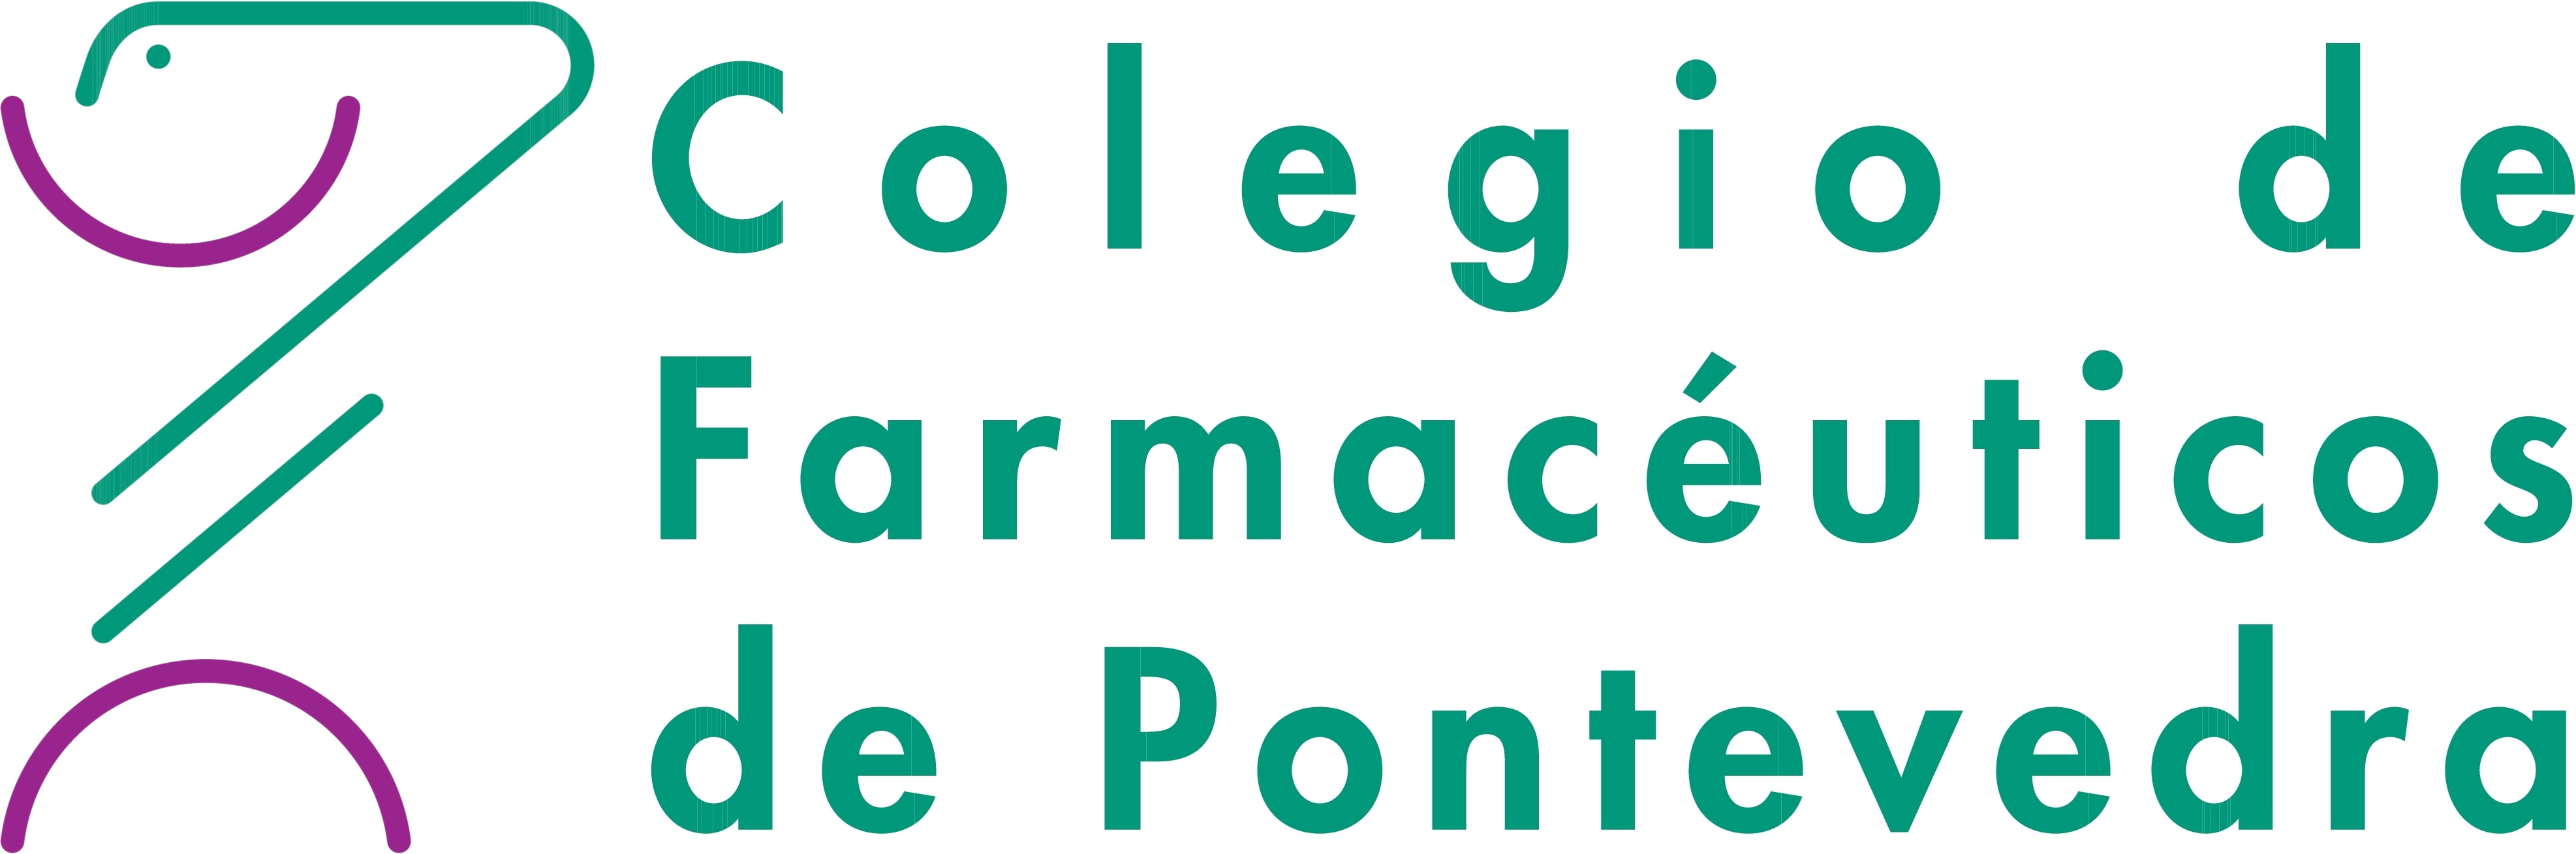 Cribado poblacional de COVID-19 en personas asintomáticas en farmacias de Pontevedra - Colegio de Farmacéuticos de Pontevedra